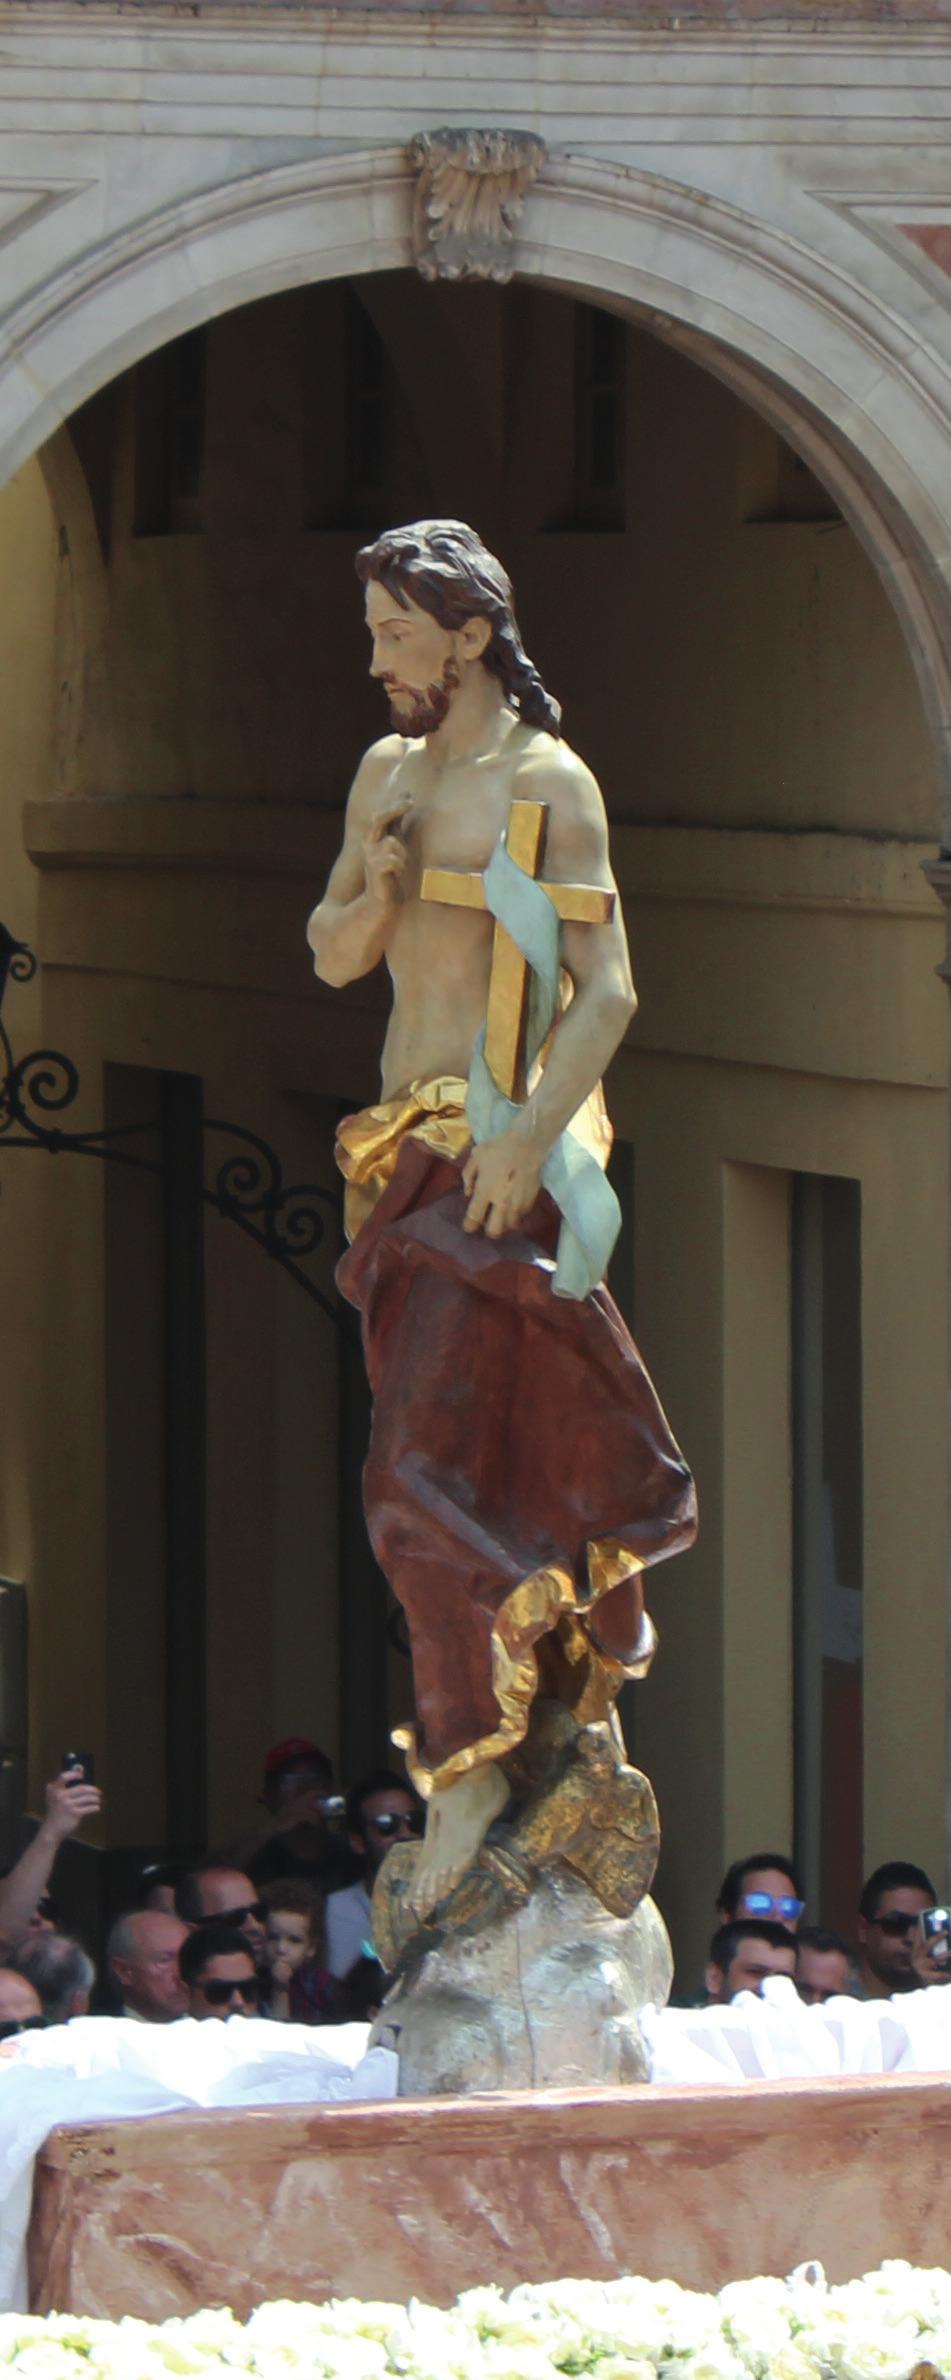 Santísimo cristo resucitado José Capuz Mamano (1884-1964) realizó la imagen del Santísimo Cristo Resucitado junto a dos soldados romanos que custodiaban el sepulcro en el año 1946.